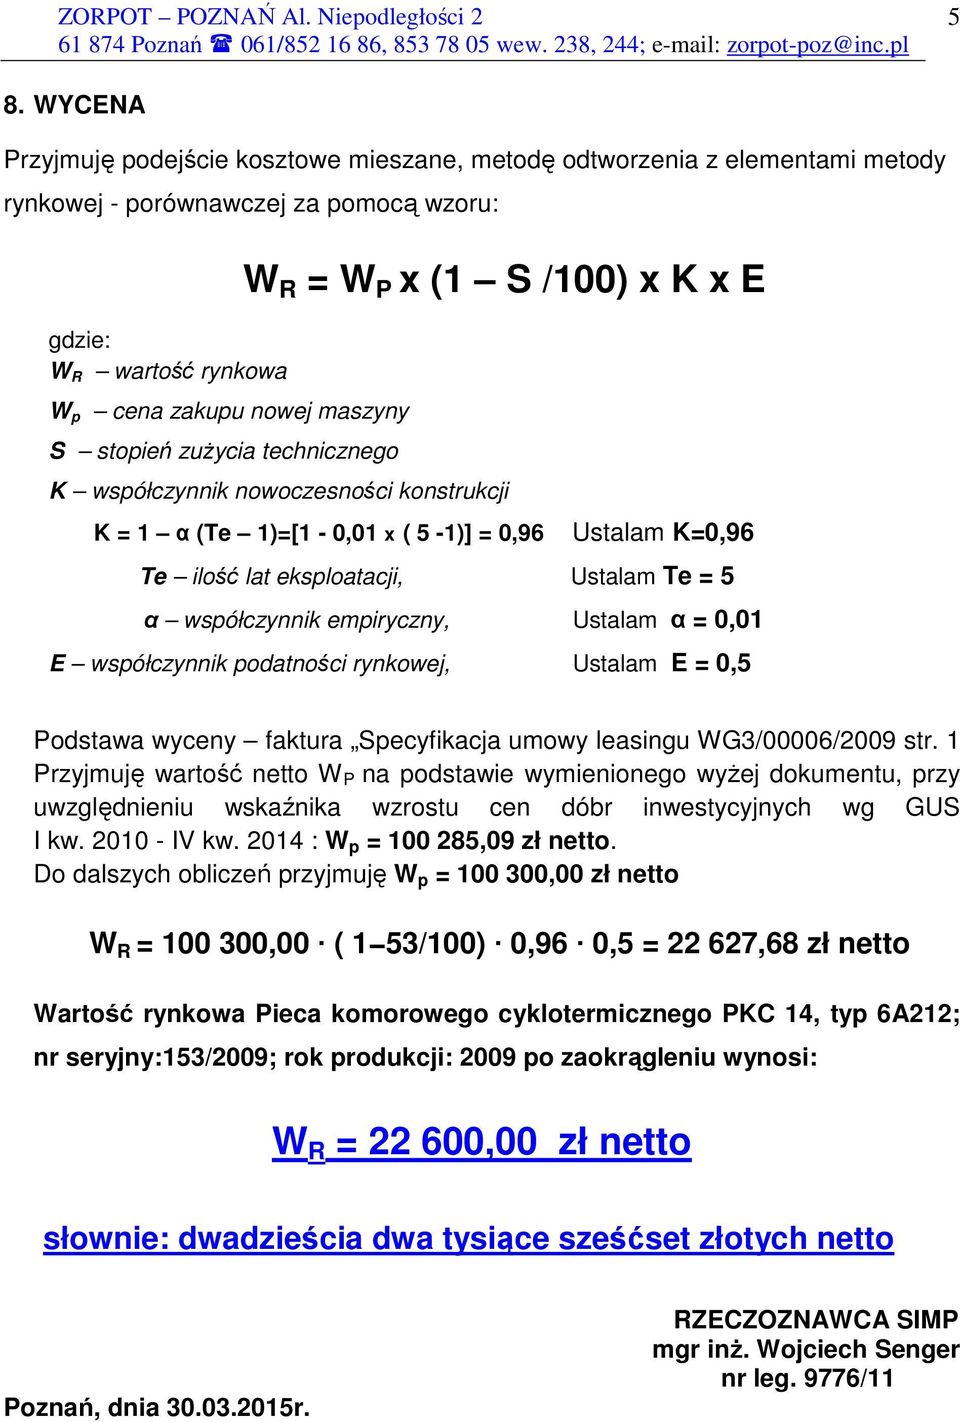 współczynnik empiryczny, Ustalam α = 0,01 E współczynnik podatności rynkowej, Ustalam E = 0,5 Podstawa wyceny faktura Specyfikacja umowy leasingu WG3/00006/2009 str.